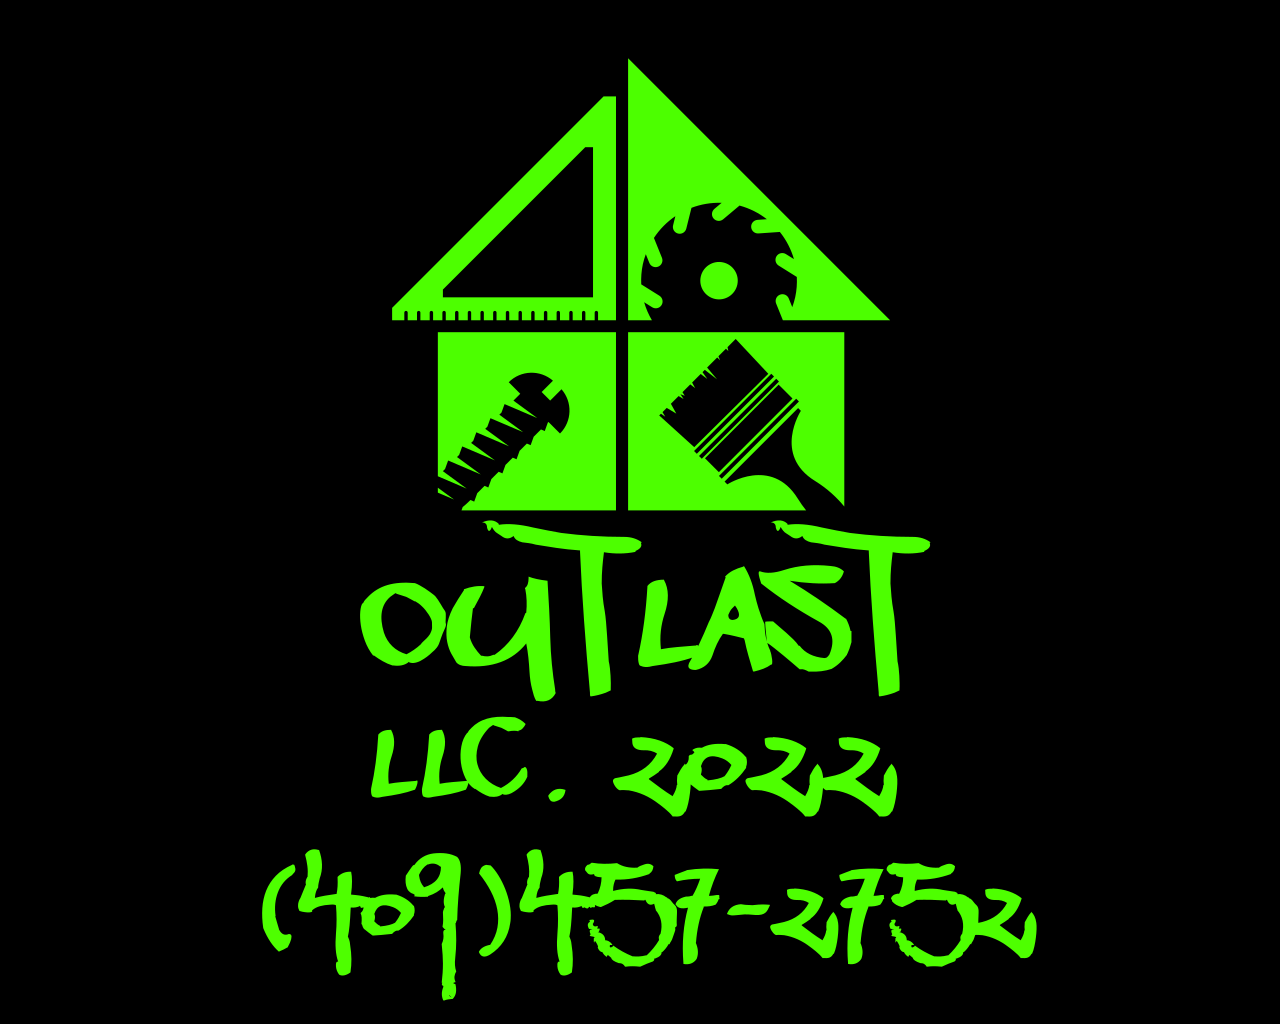 Outlast LLC Logo